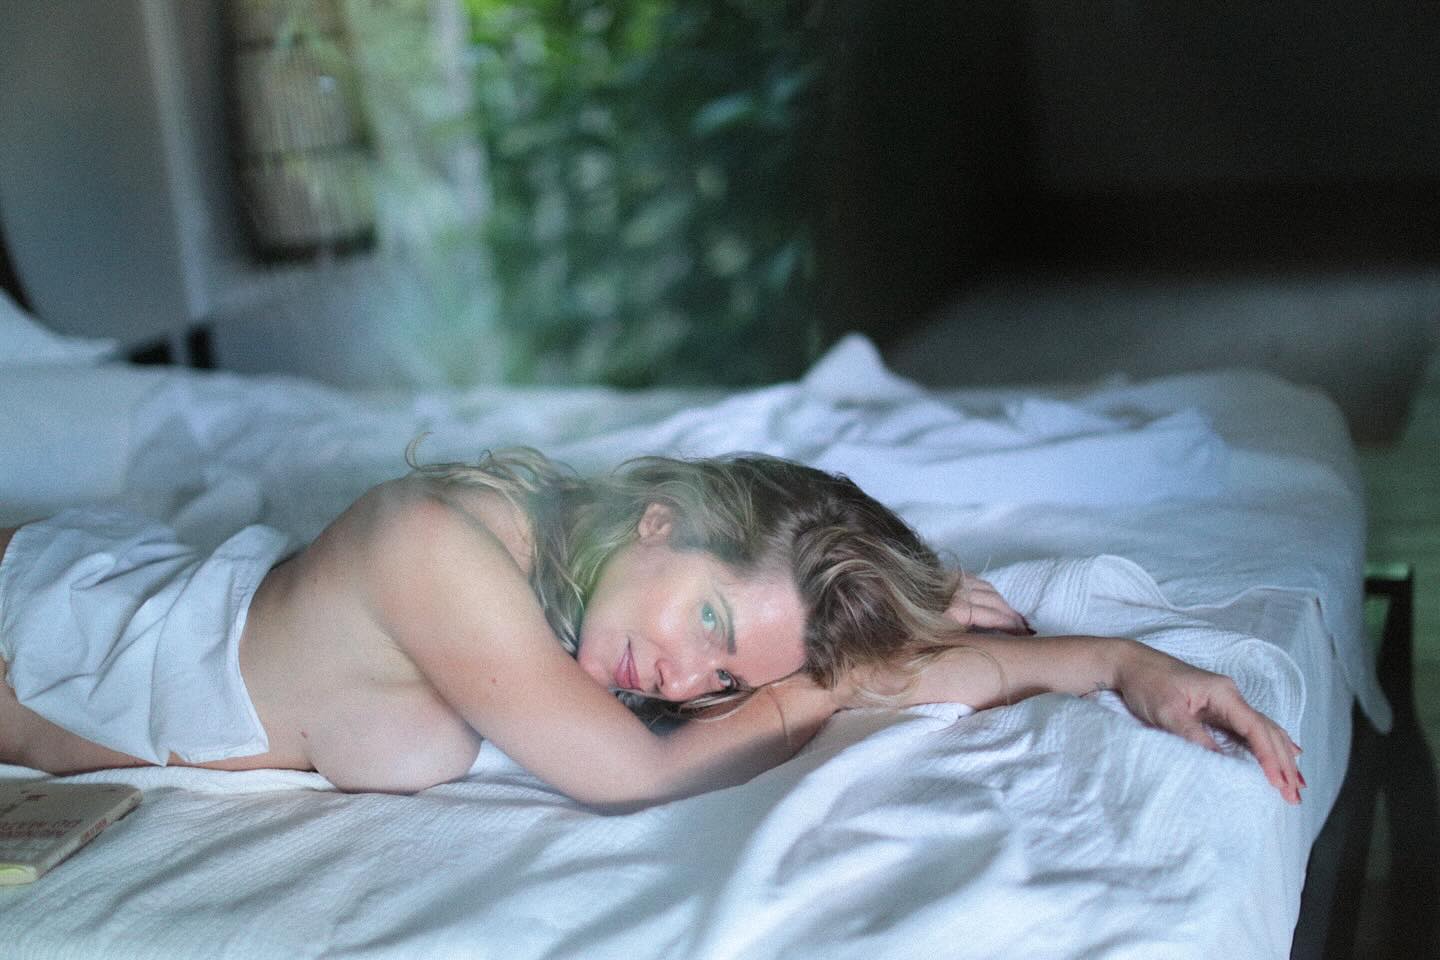 Leticia Spiller posou de topless na cama em “dia de preguiça” - Foto: Reprodução/ Instagram@maripatriotainsta